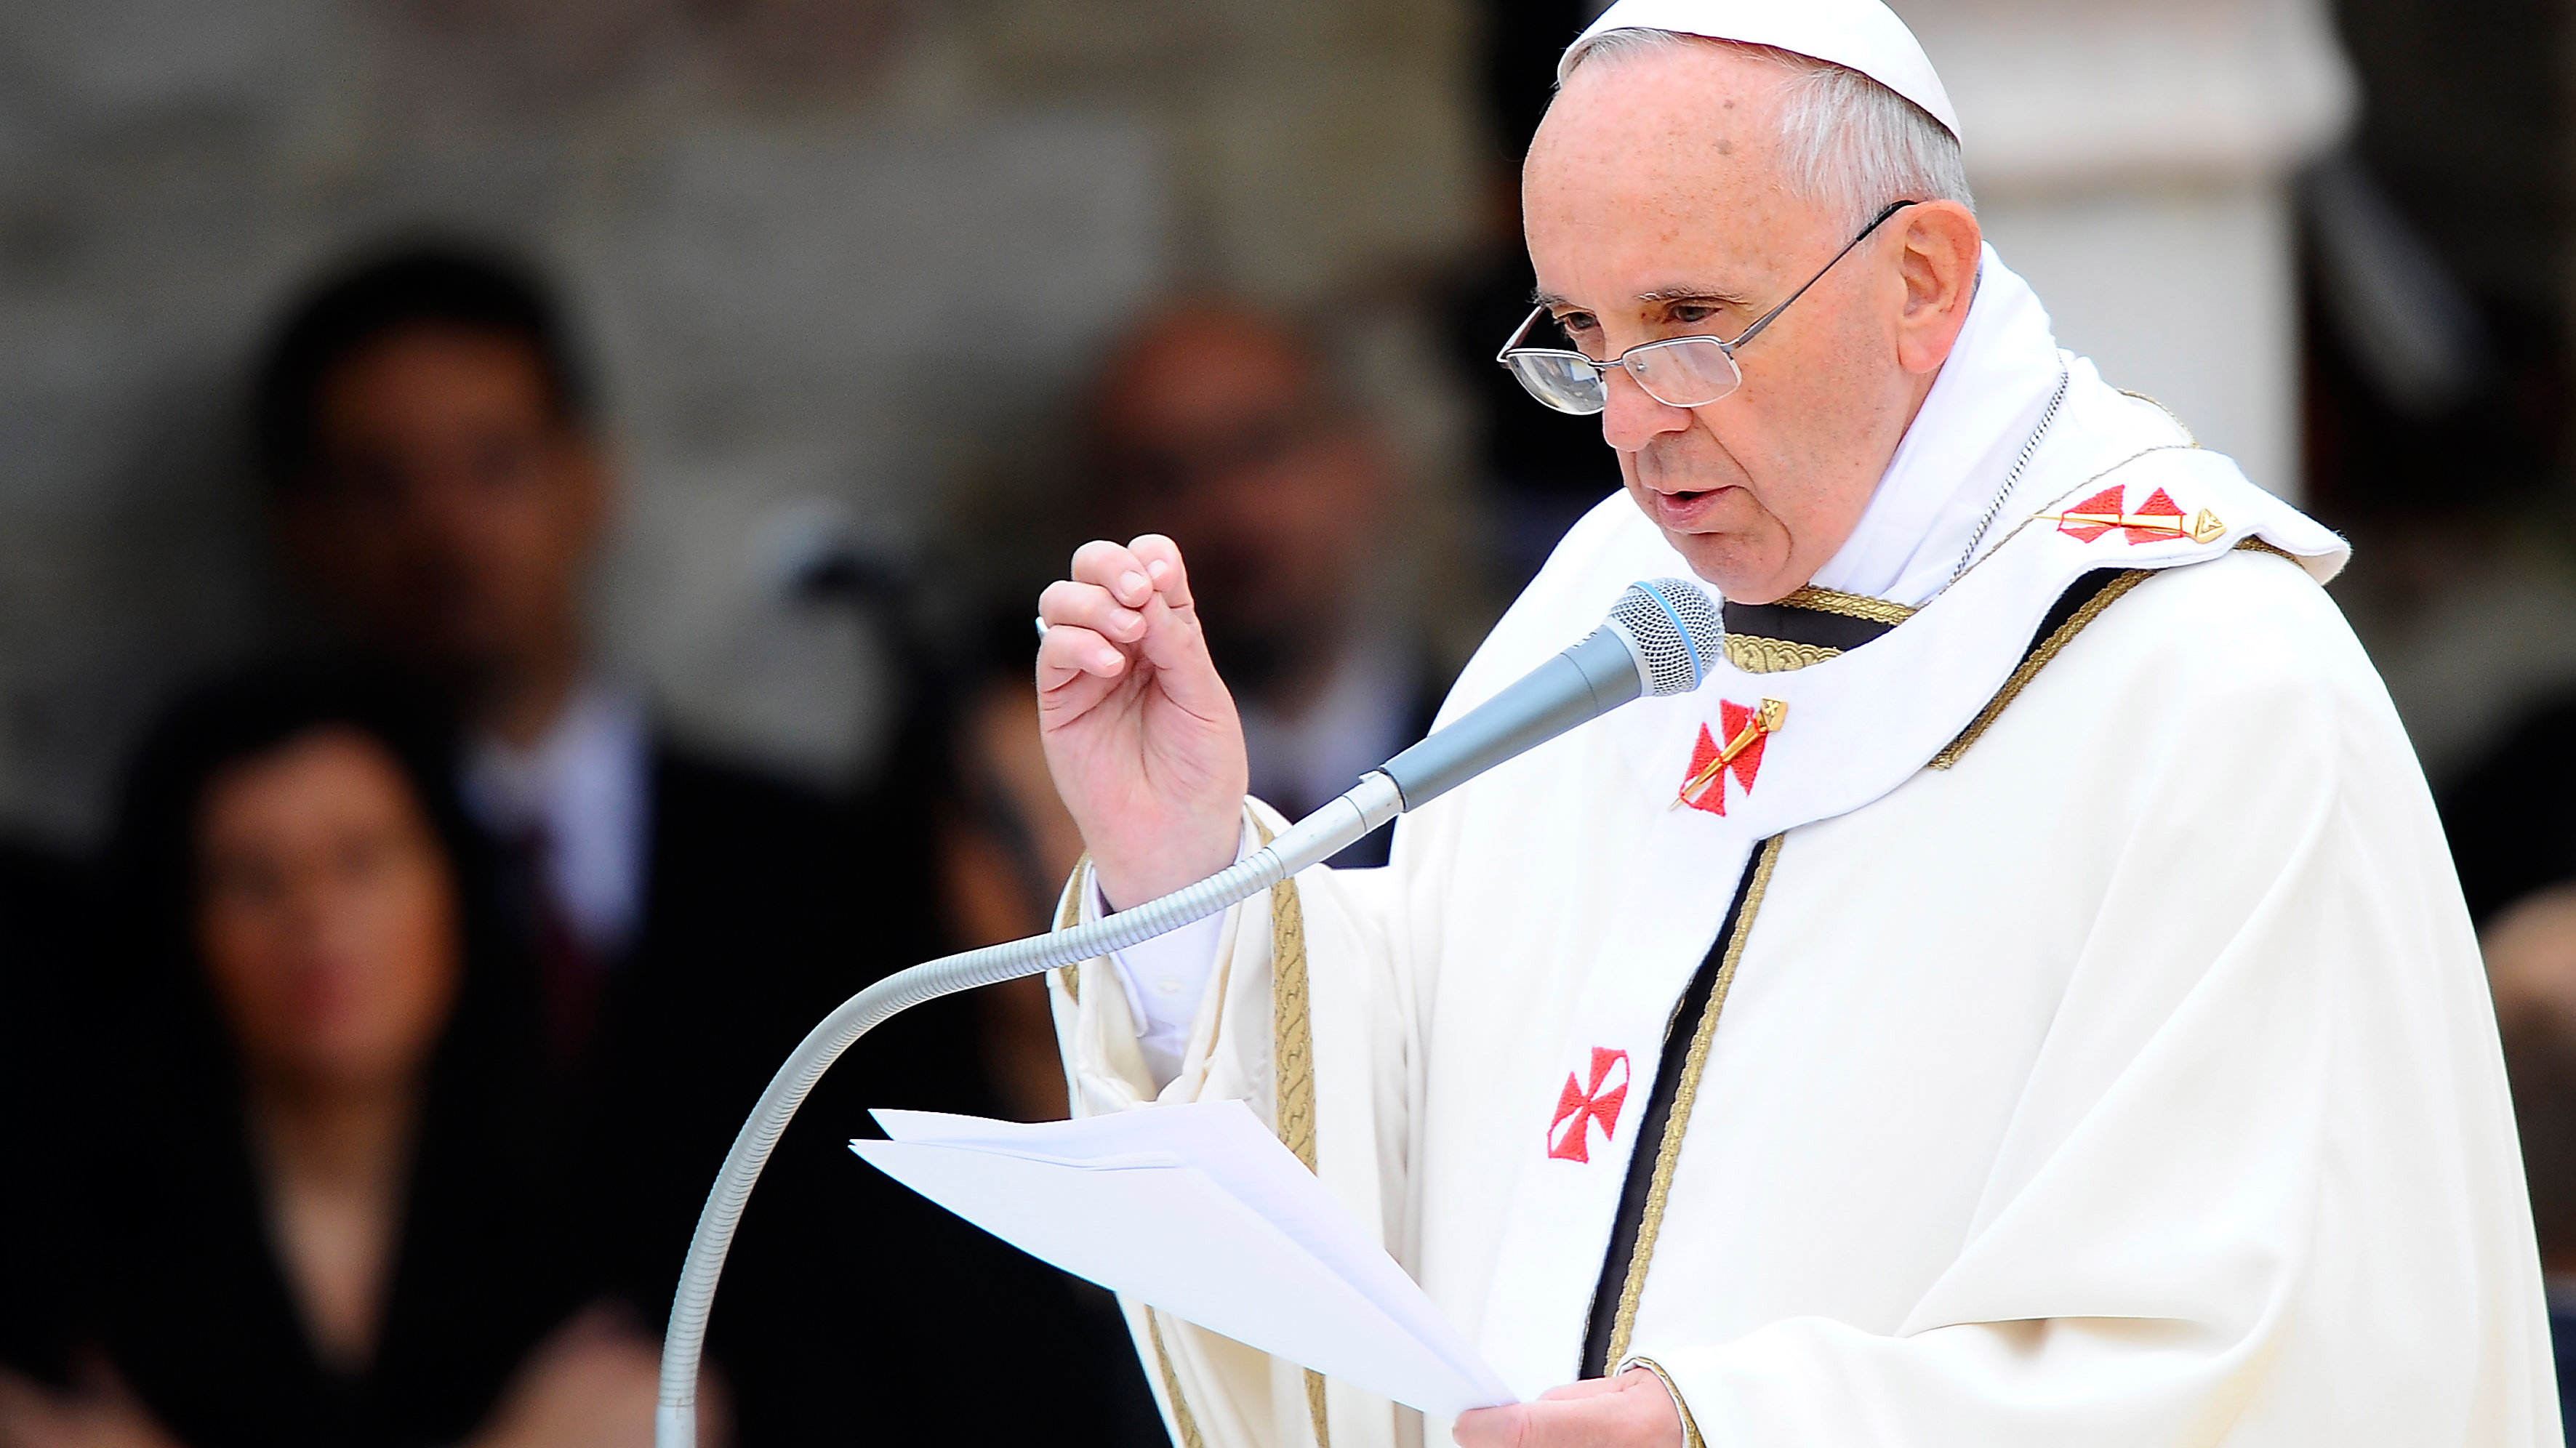 oburzenie błogosławieństwem par homoseksualnych. papież: to hipokryzja